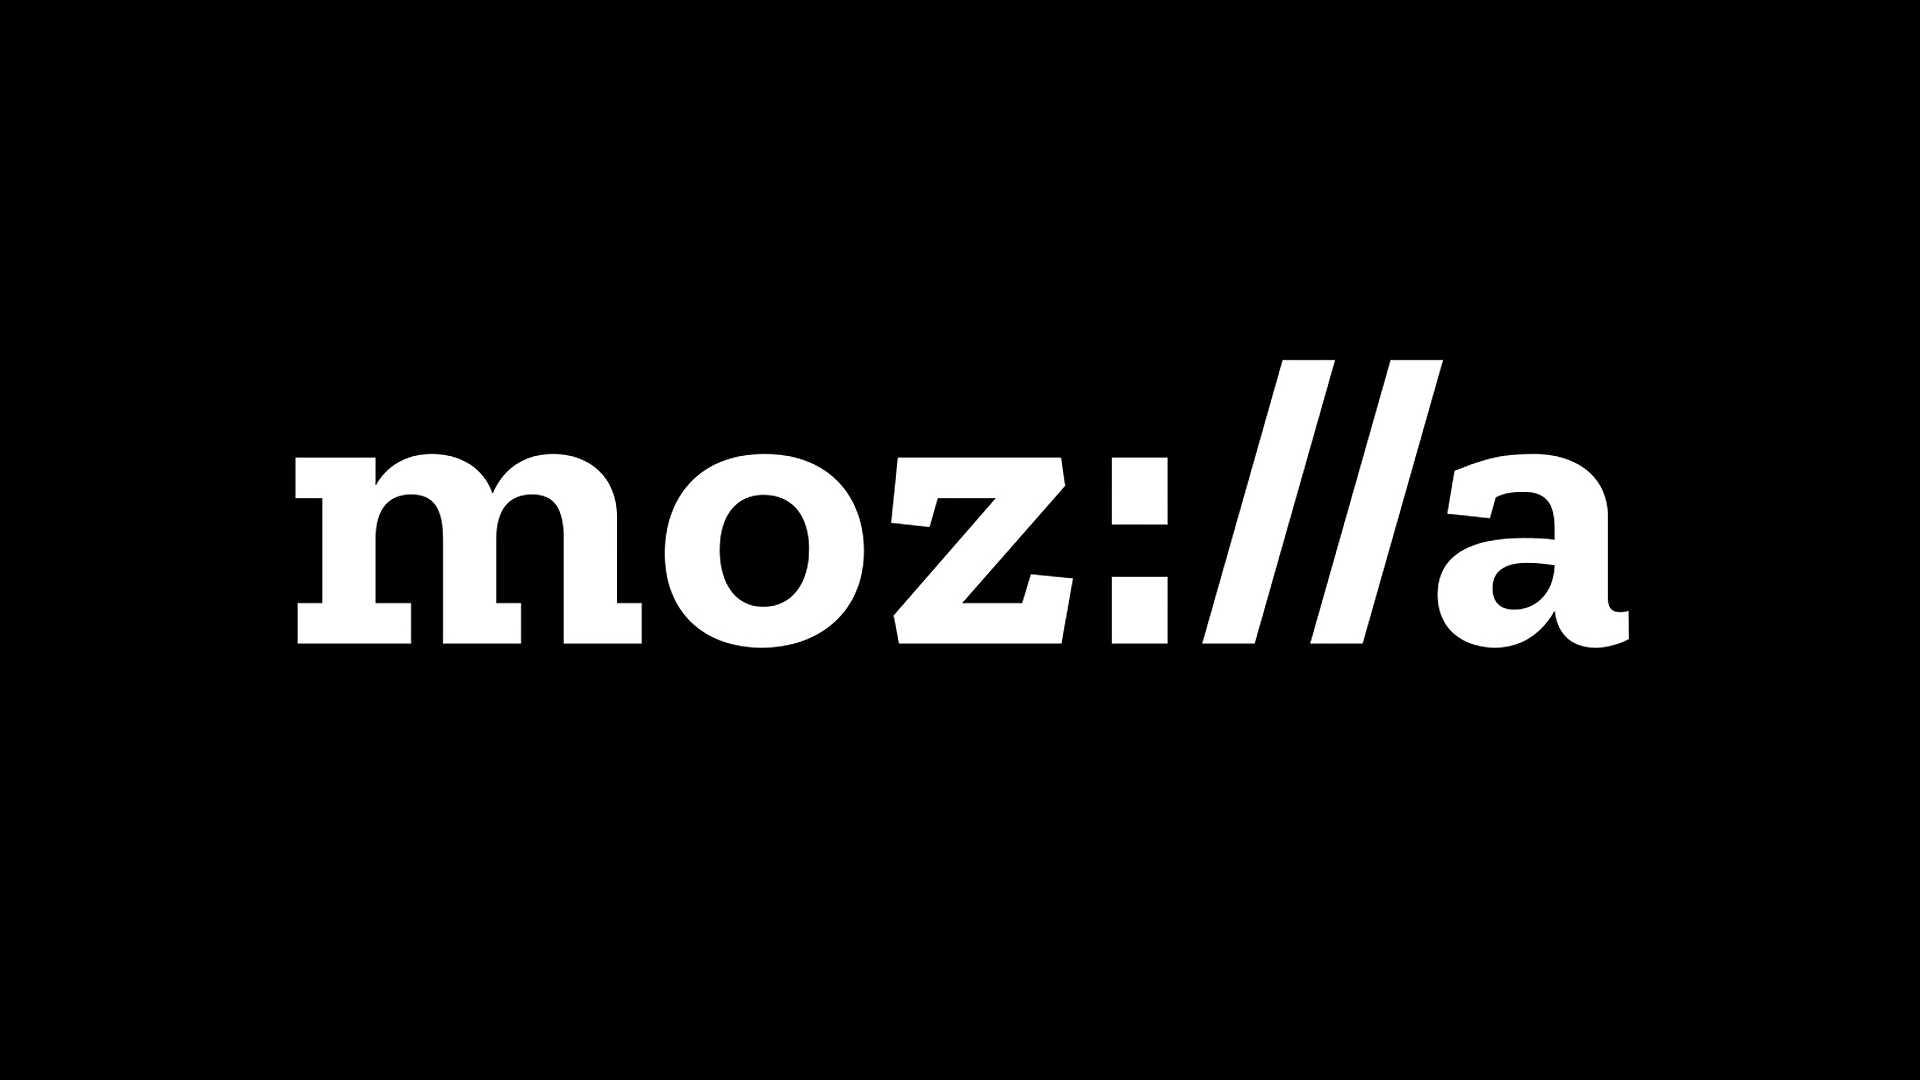 Mozilla